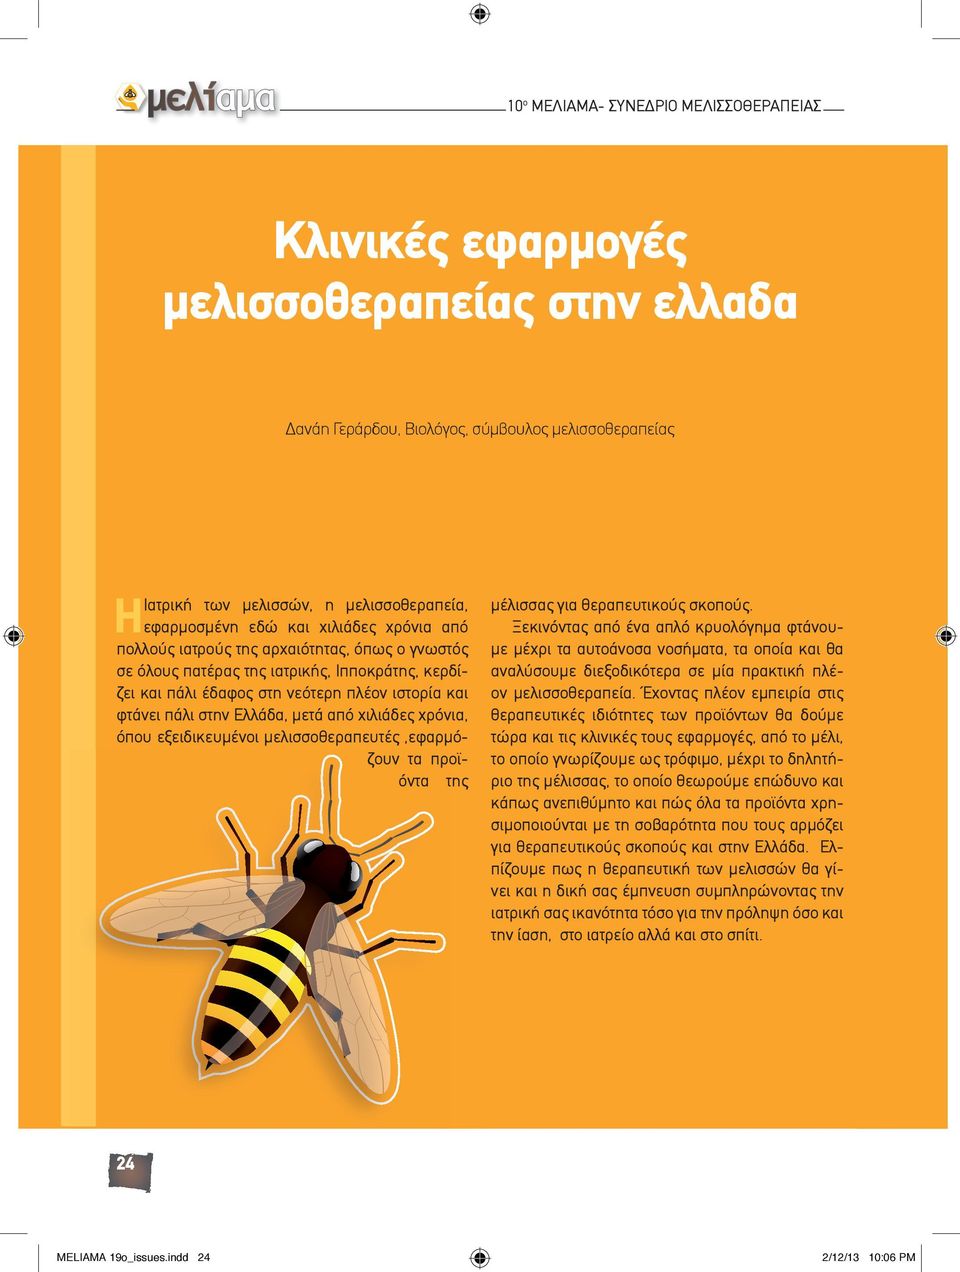 στην Ελλάδα, μετά από χιλιάδες χρόνια, όπου εξειδικευμένοι μελισσοθεραπευτές,εφαρμόζουν τα προϊόντα της μέλισσας για θεραπευτικούς σκοπούς.